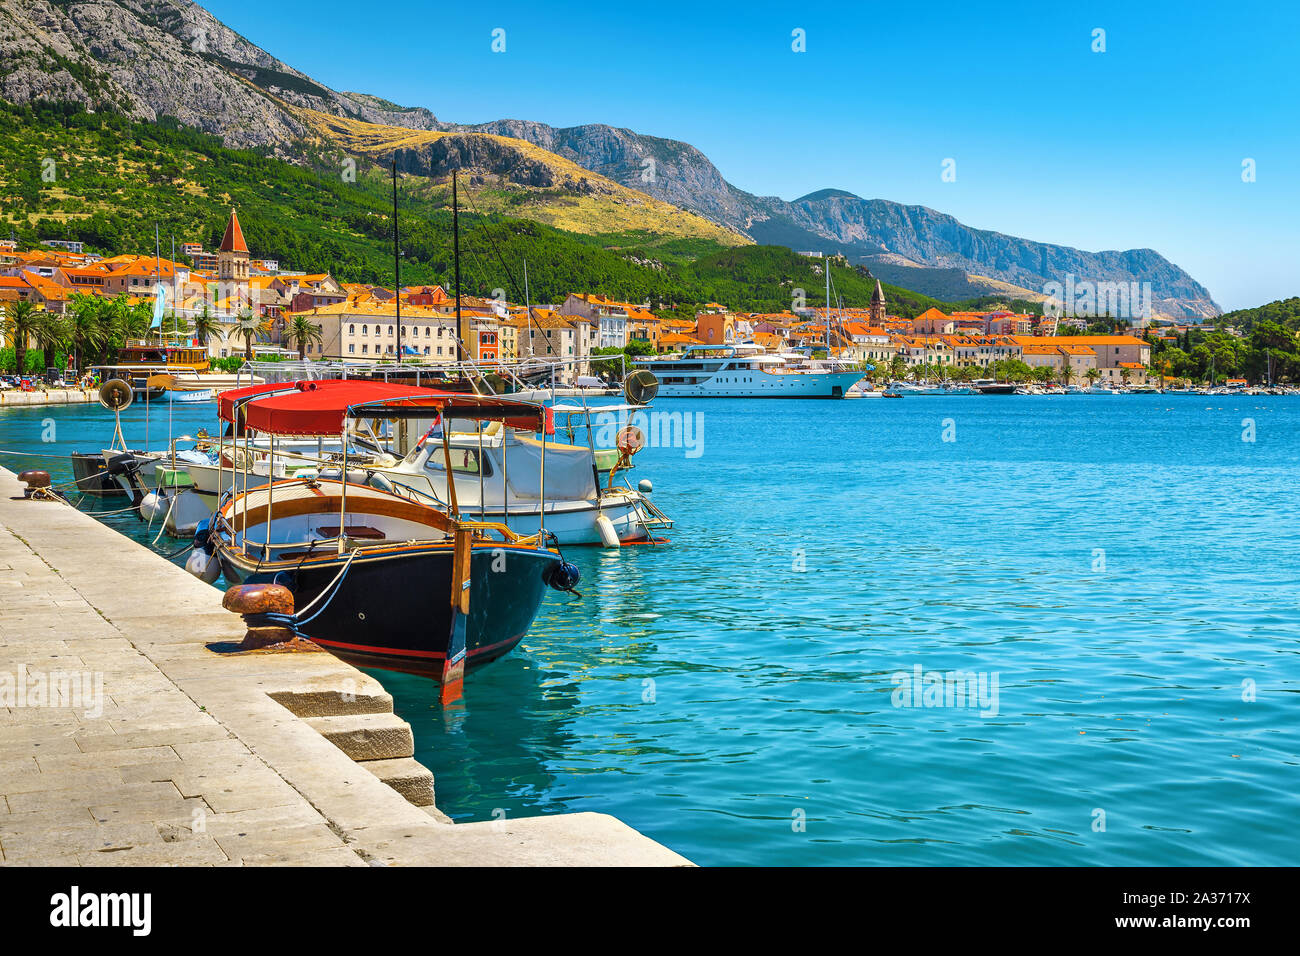 Touristique incroyable et de déplacement. Adriatic resort avec port pittoresque et touristique de bateaux, la riviera de Makarska, Dalmatie, Croatie, Europe Banque D'Images